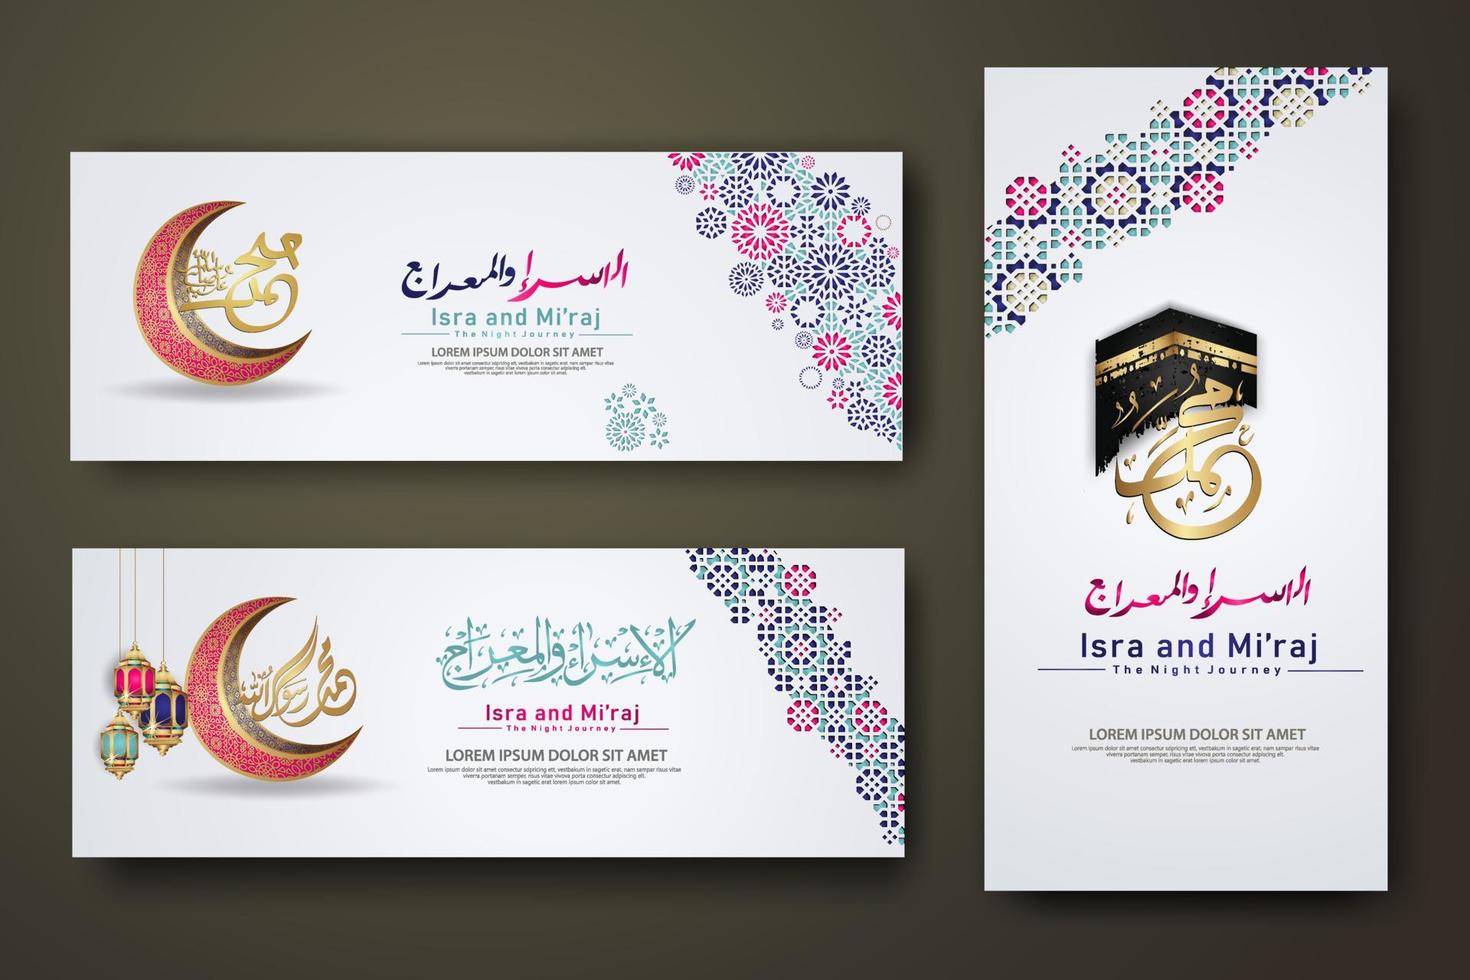 al-isra wal mi'raj prophète muhammad ensemble de calligraphie modèle de bannière vecteur